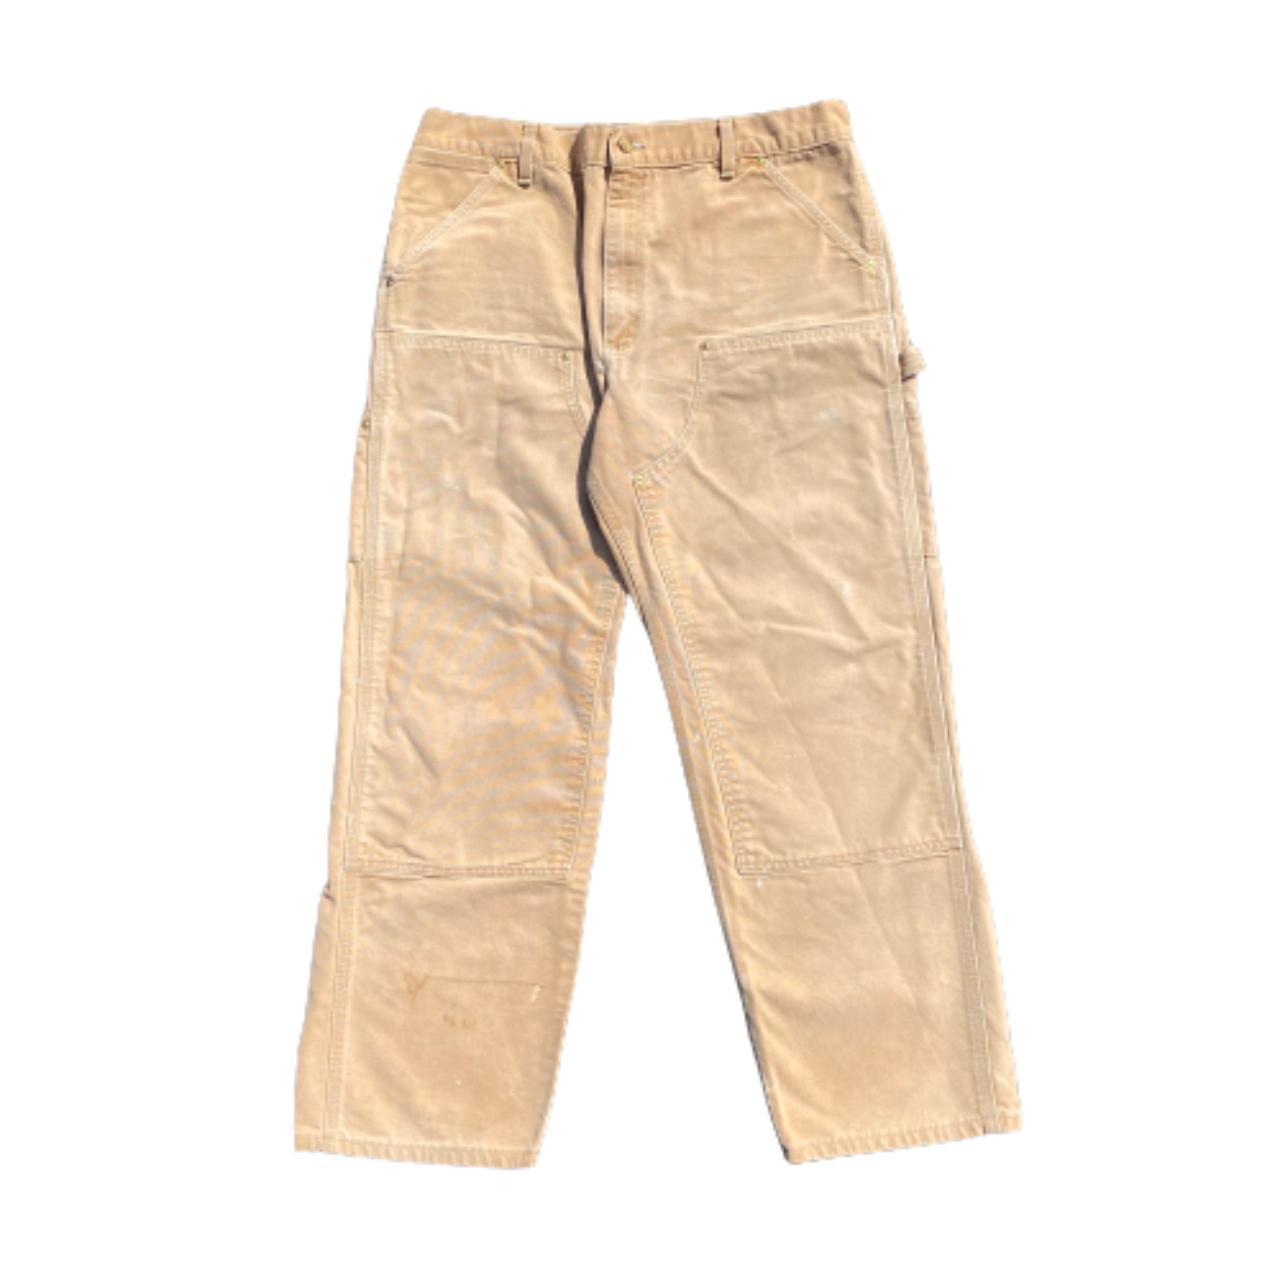 Carhartt pants size 38x32 in great shape! - Depop